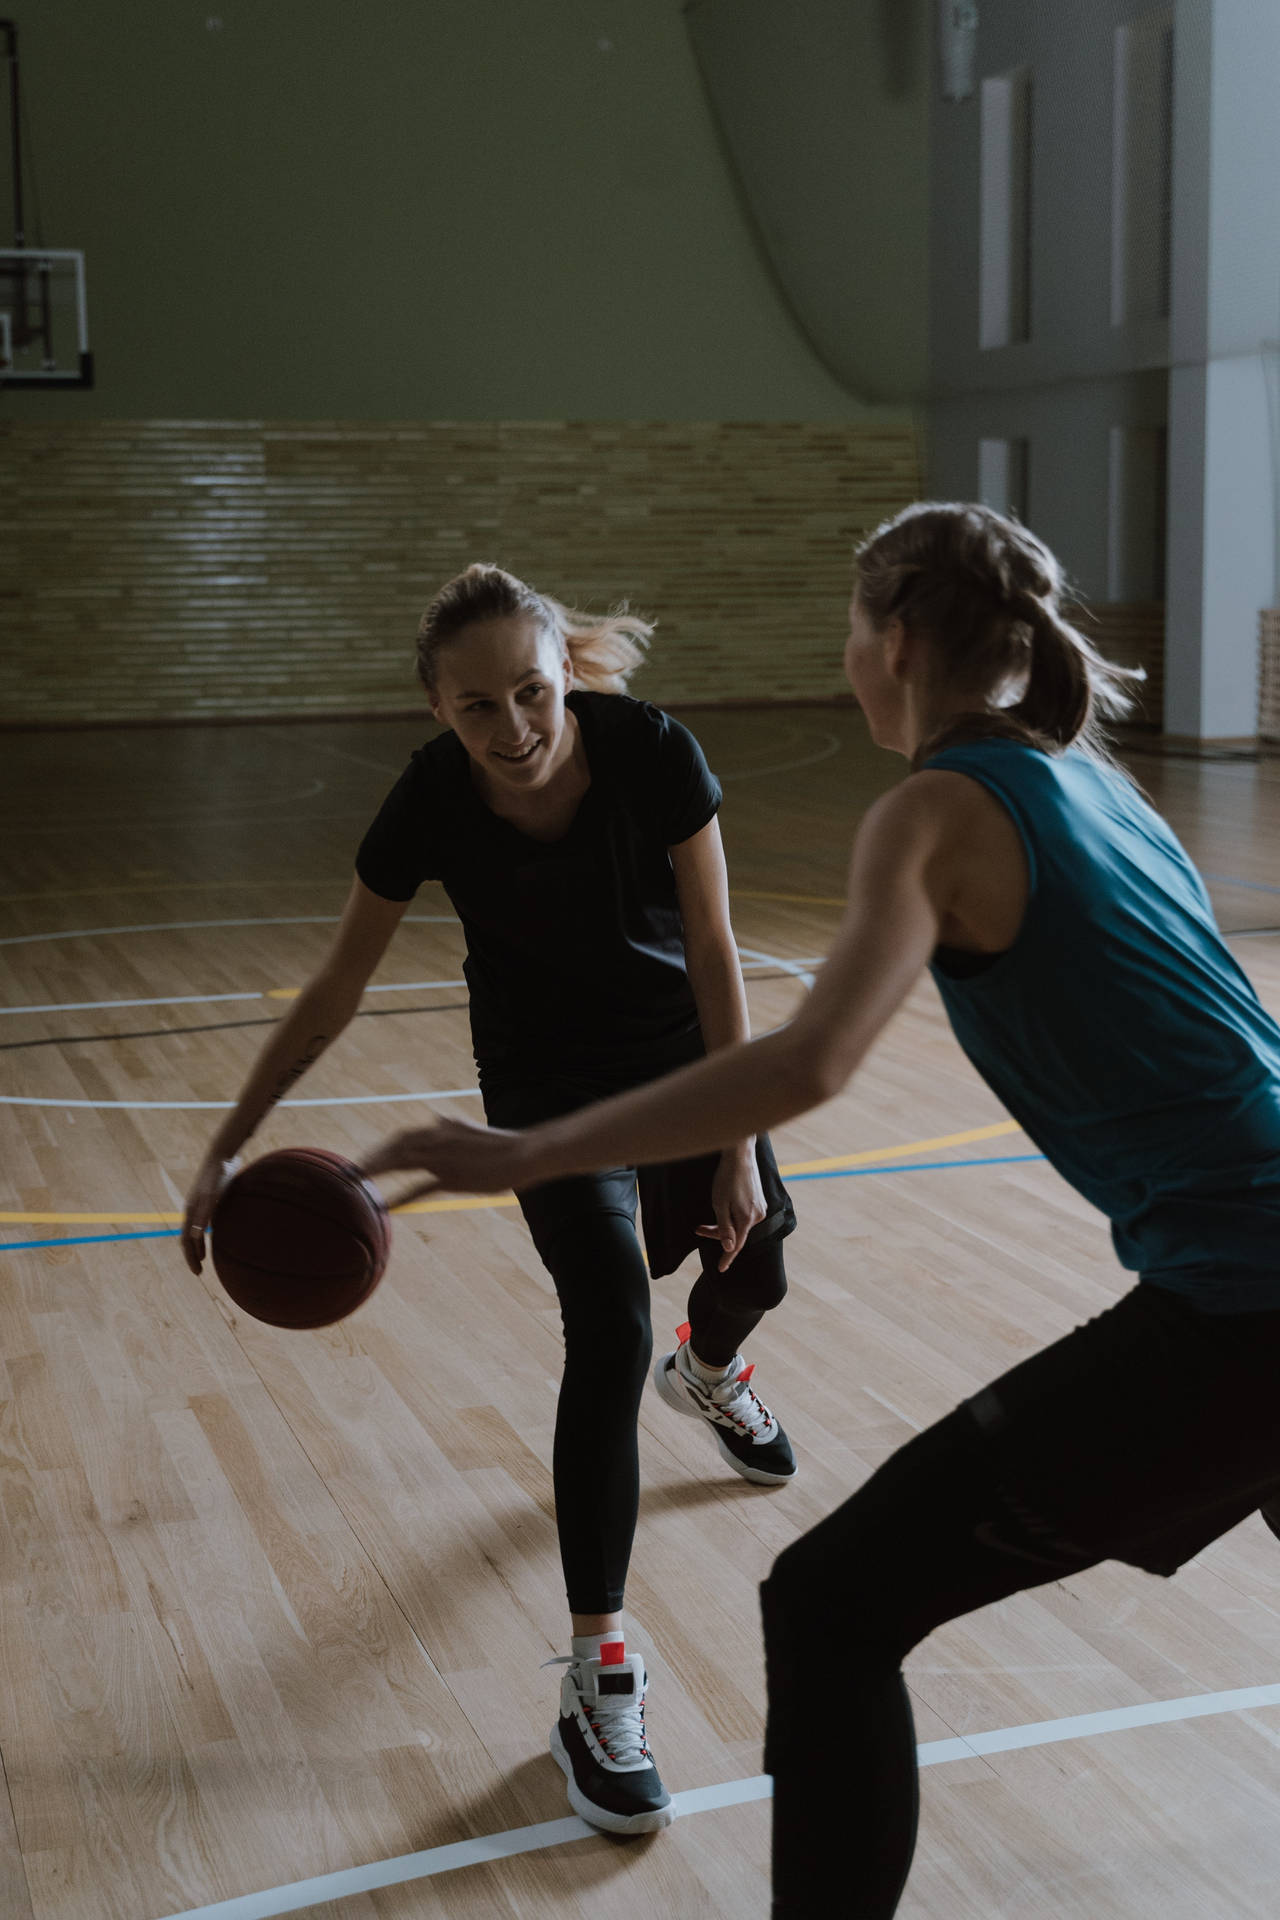 Female Basketball Physical Education Background